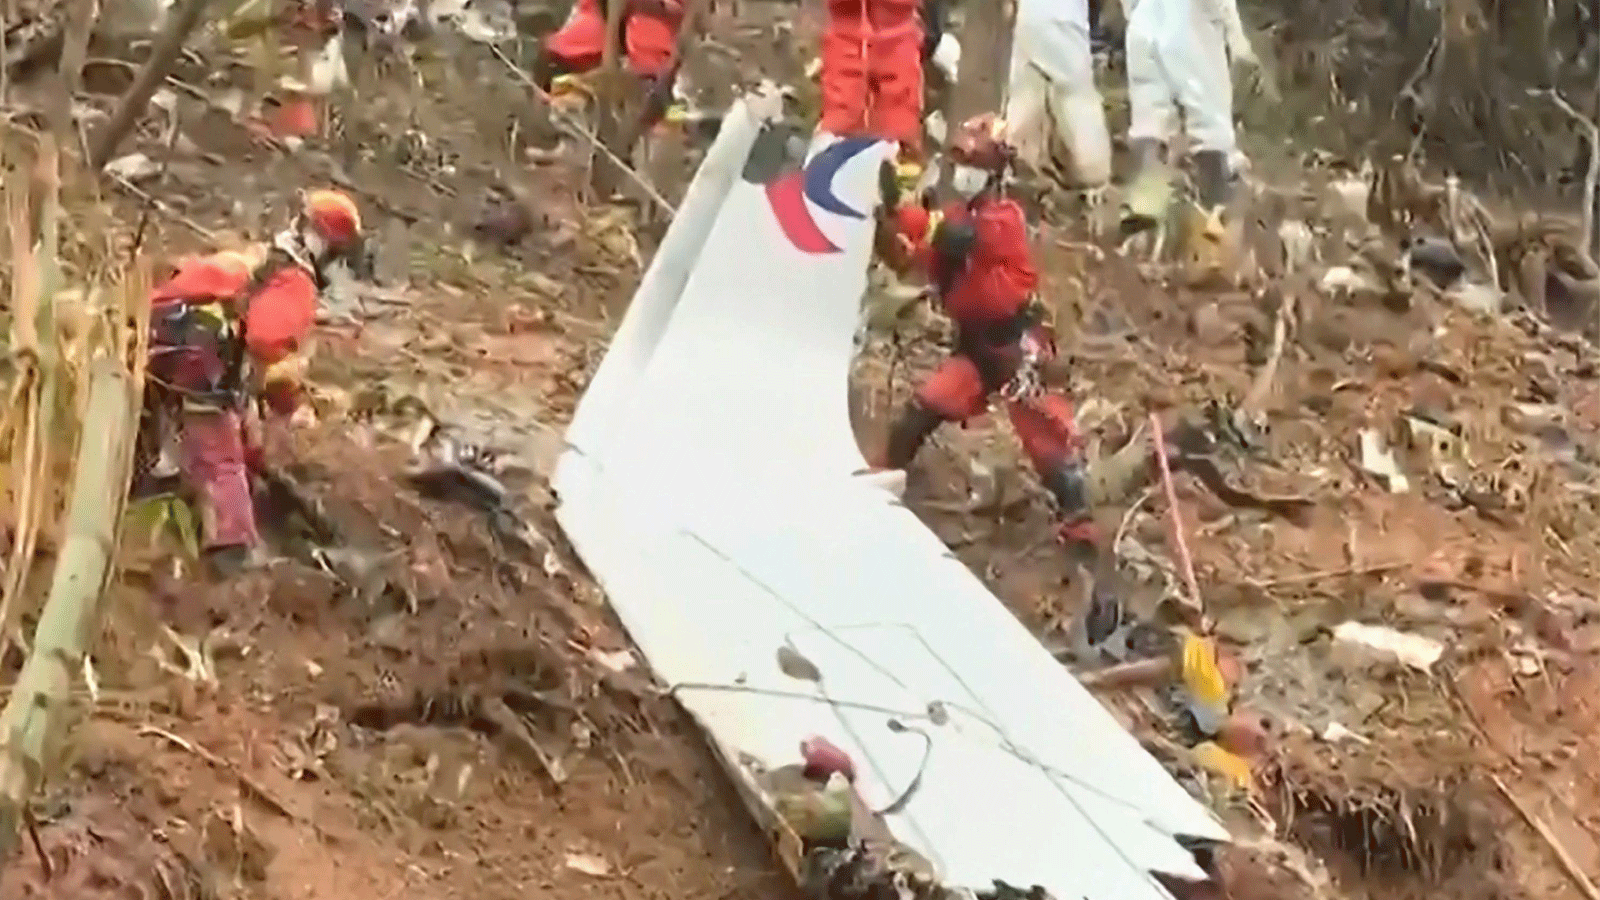  فرق الإنقاذ يسحبون قطعة من جسم الطائرة أثناء بحثهم في الموقع حيث تحطمت طائرة ركاب تابعة لشركة China Eastern على سفح جبل بالقرب من Wuzhou في منطقة Guangxi جنوب الصين.